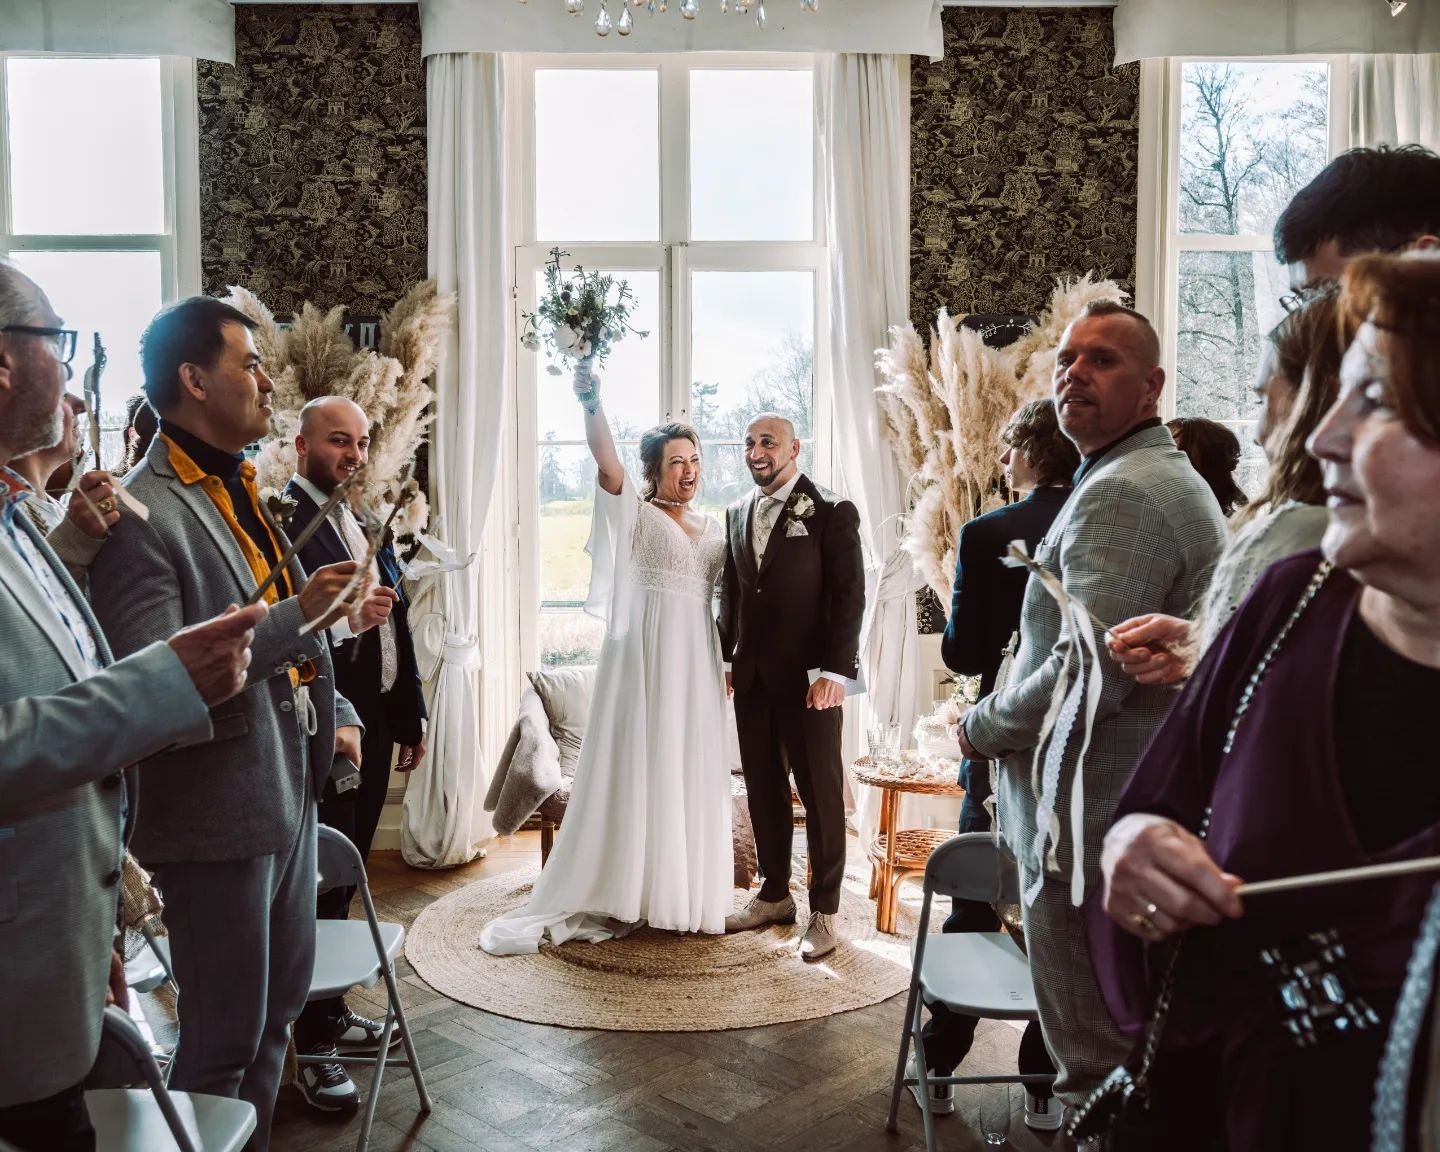 Feestend de zaal uit 💍🎊

#BruiloftenFotografie #bruiloft #trouwen #wedding #party #kasteeldehaere #ceremonie #trouwjurk #feest #trouwfotograaf #trouwfotoinspiratie #bruidsfotograaf #deventer #olst #trouwendeventer #trouwfotografie #weddingawards #t